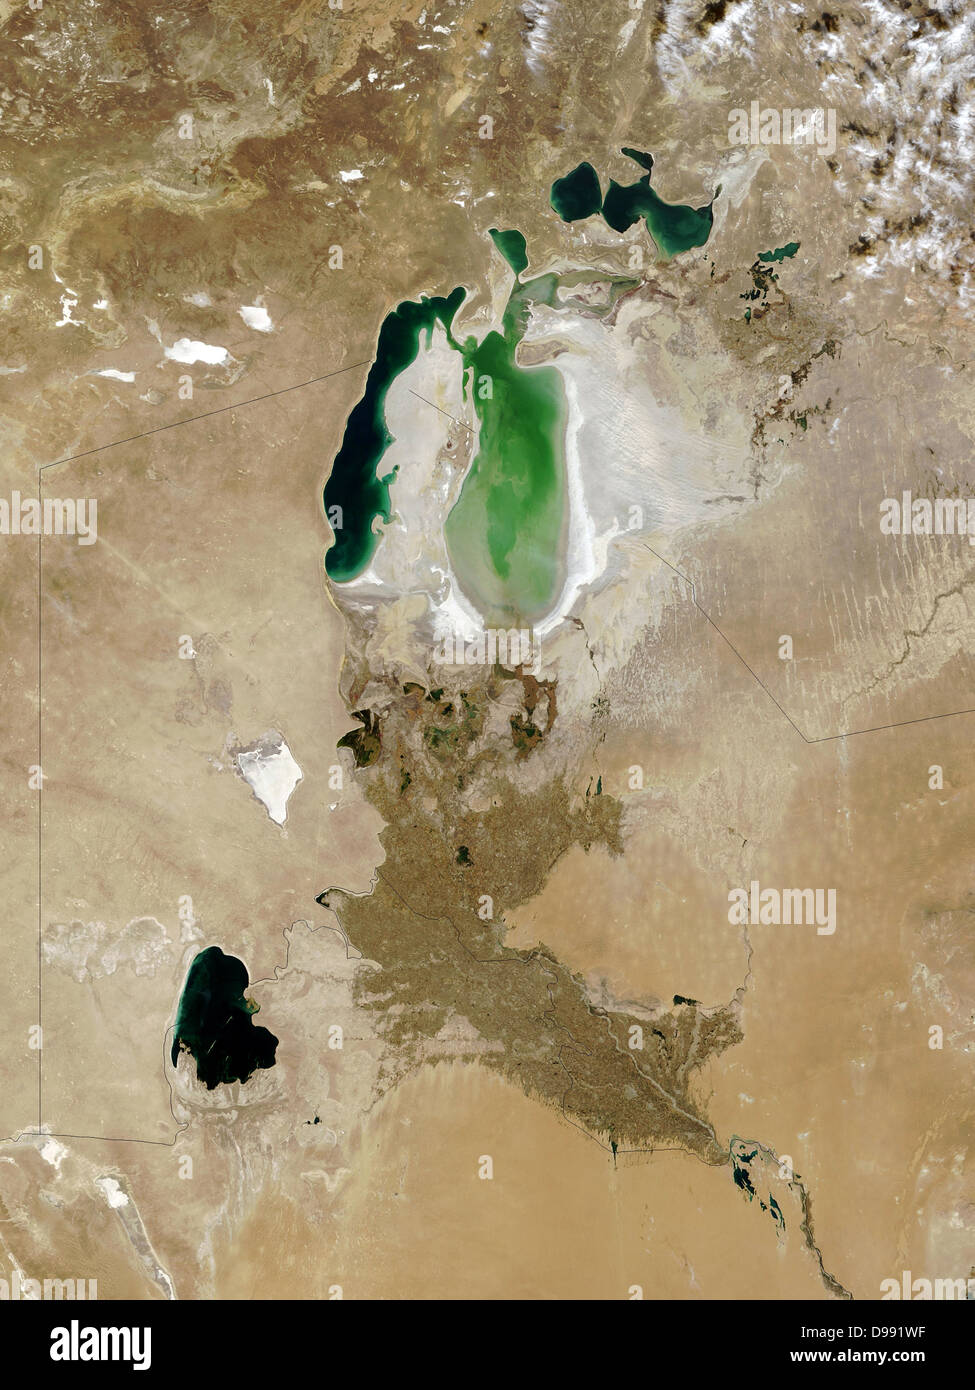 L'Aral, octobre 2008. Une fois que la quatrième plus grande mer intérieure dans le sud du Kazakhstan, l'Ouzbékistan et du nord qu'il a divisé en trois plans d'eau. Principale cause de retrait en raison de détournement de l'eau pour l'agriculture. Crédit NASA. Banque D'Images